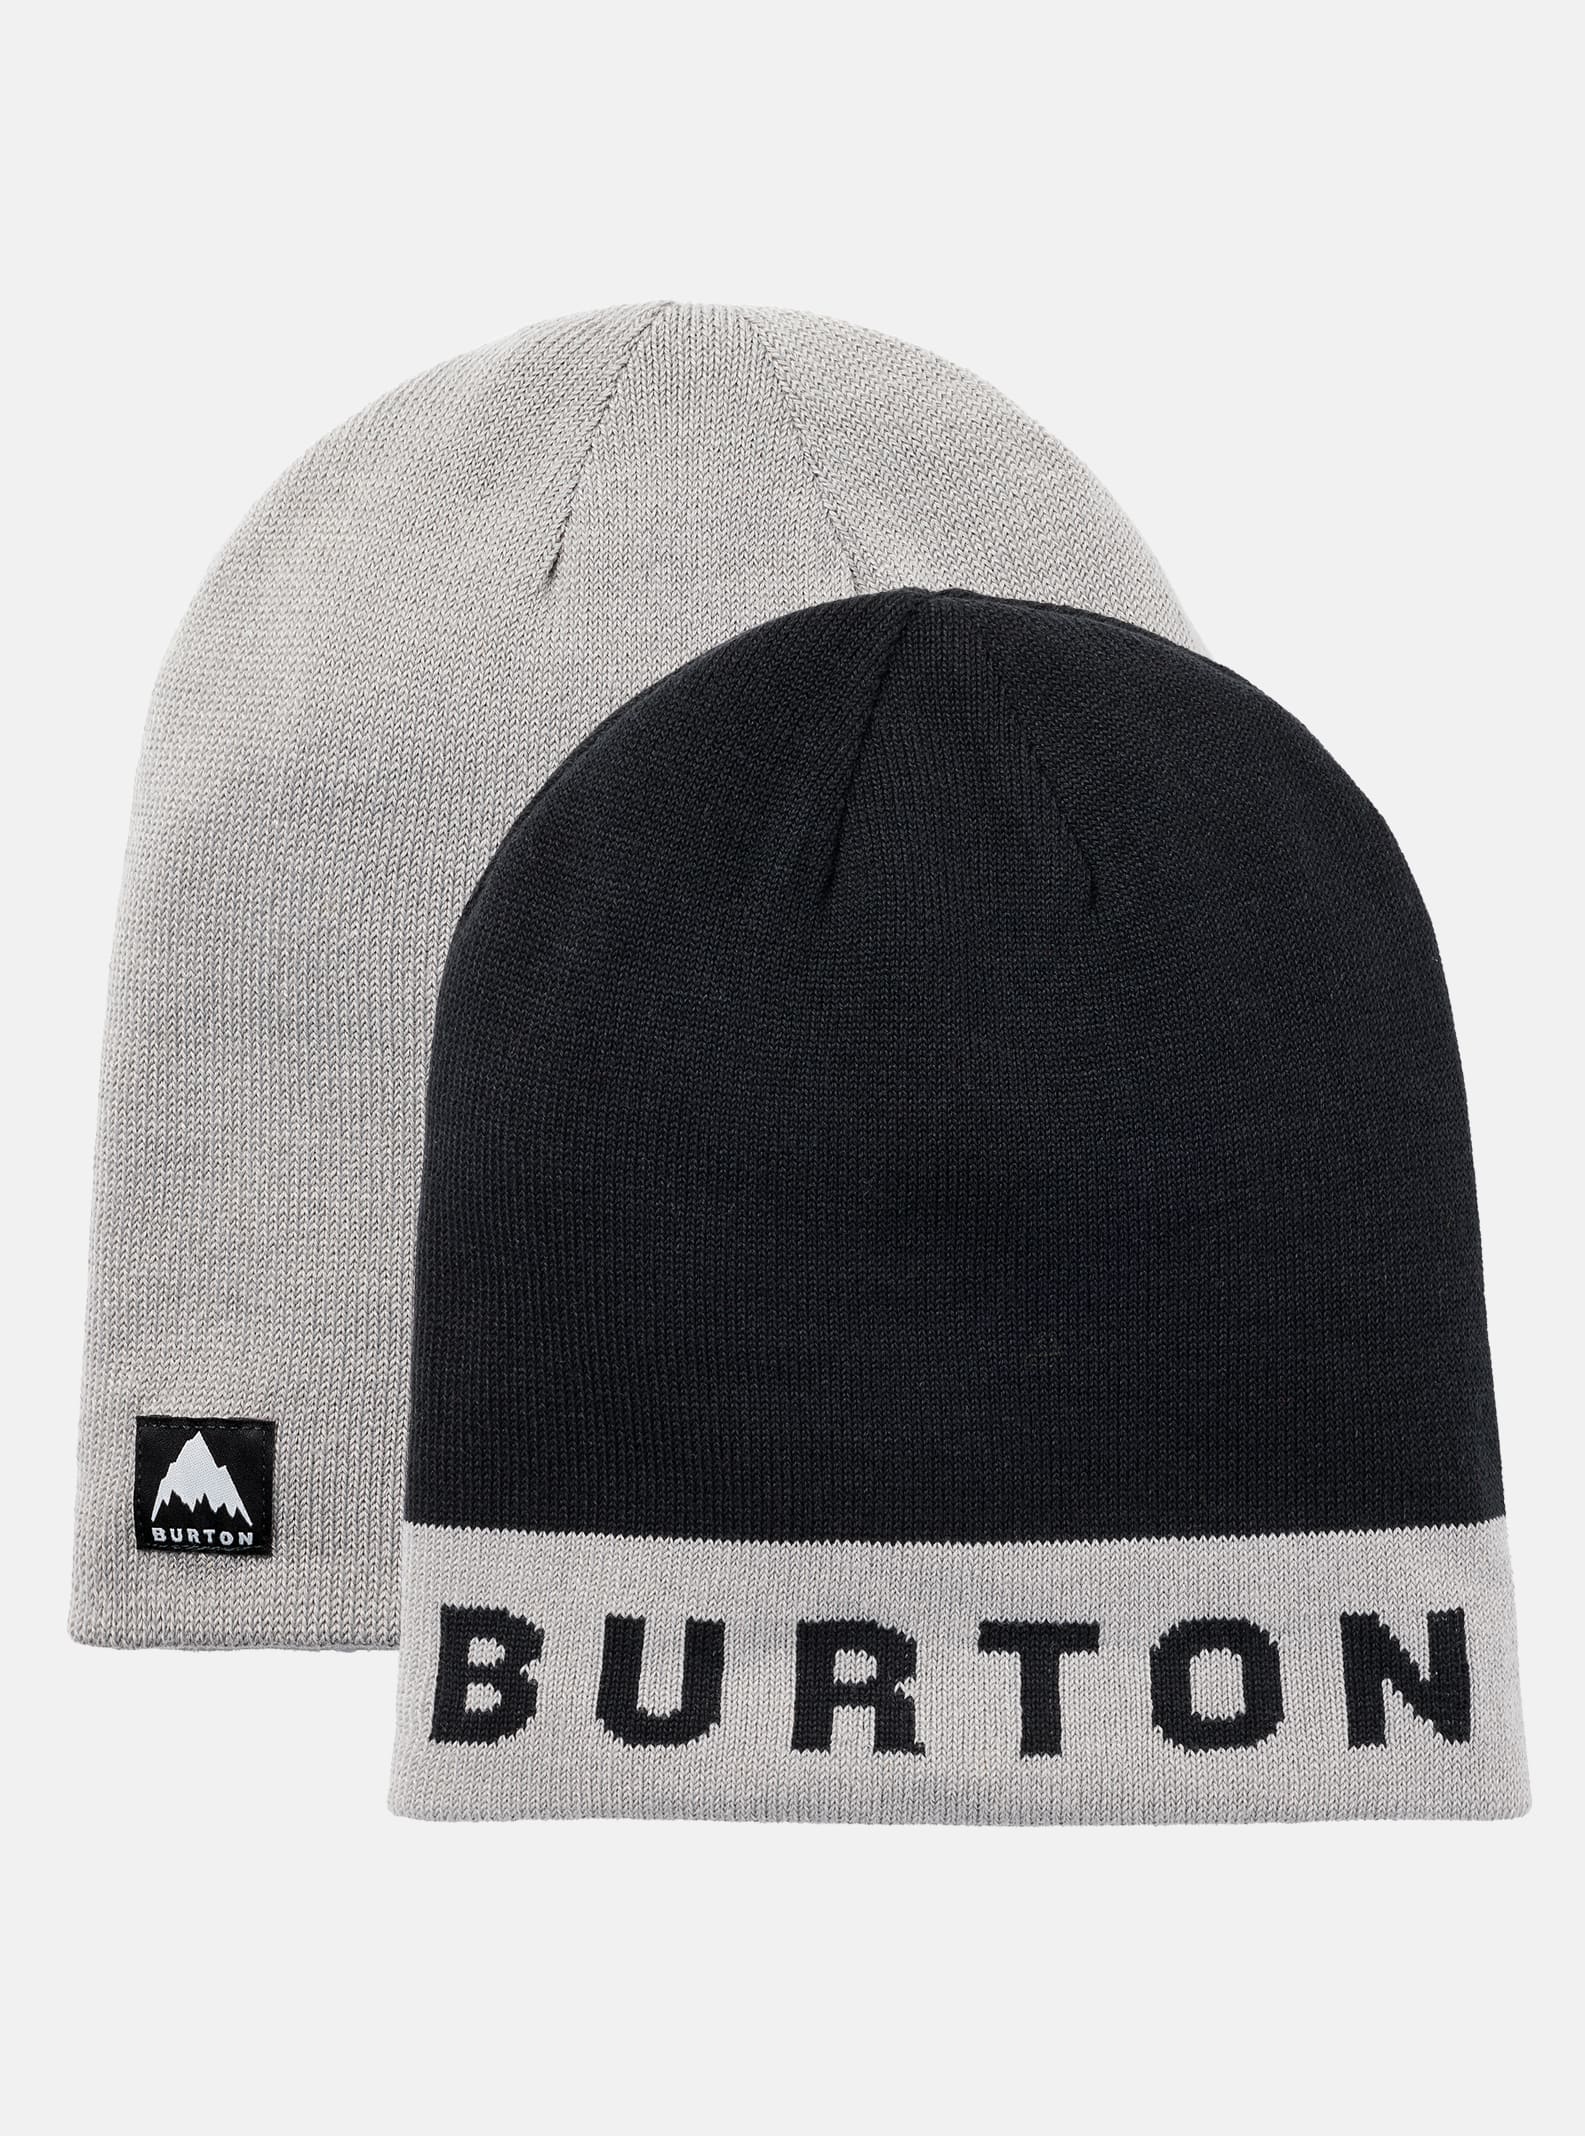 新品送料無料 BURTON バートン シングルニット帽